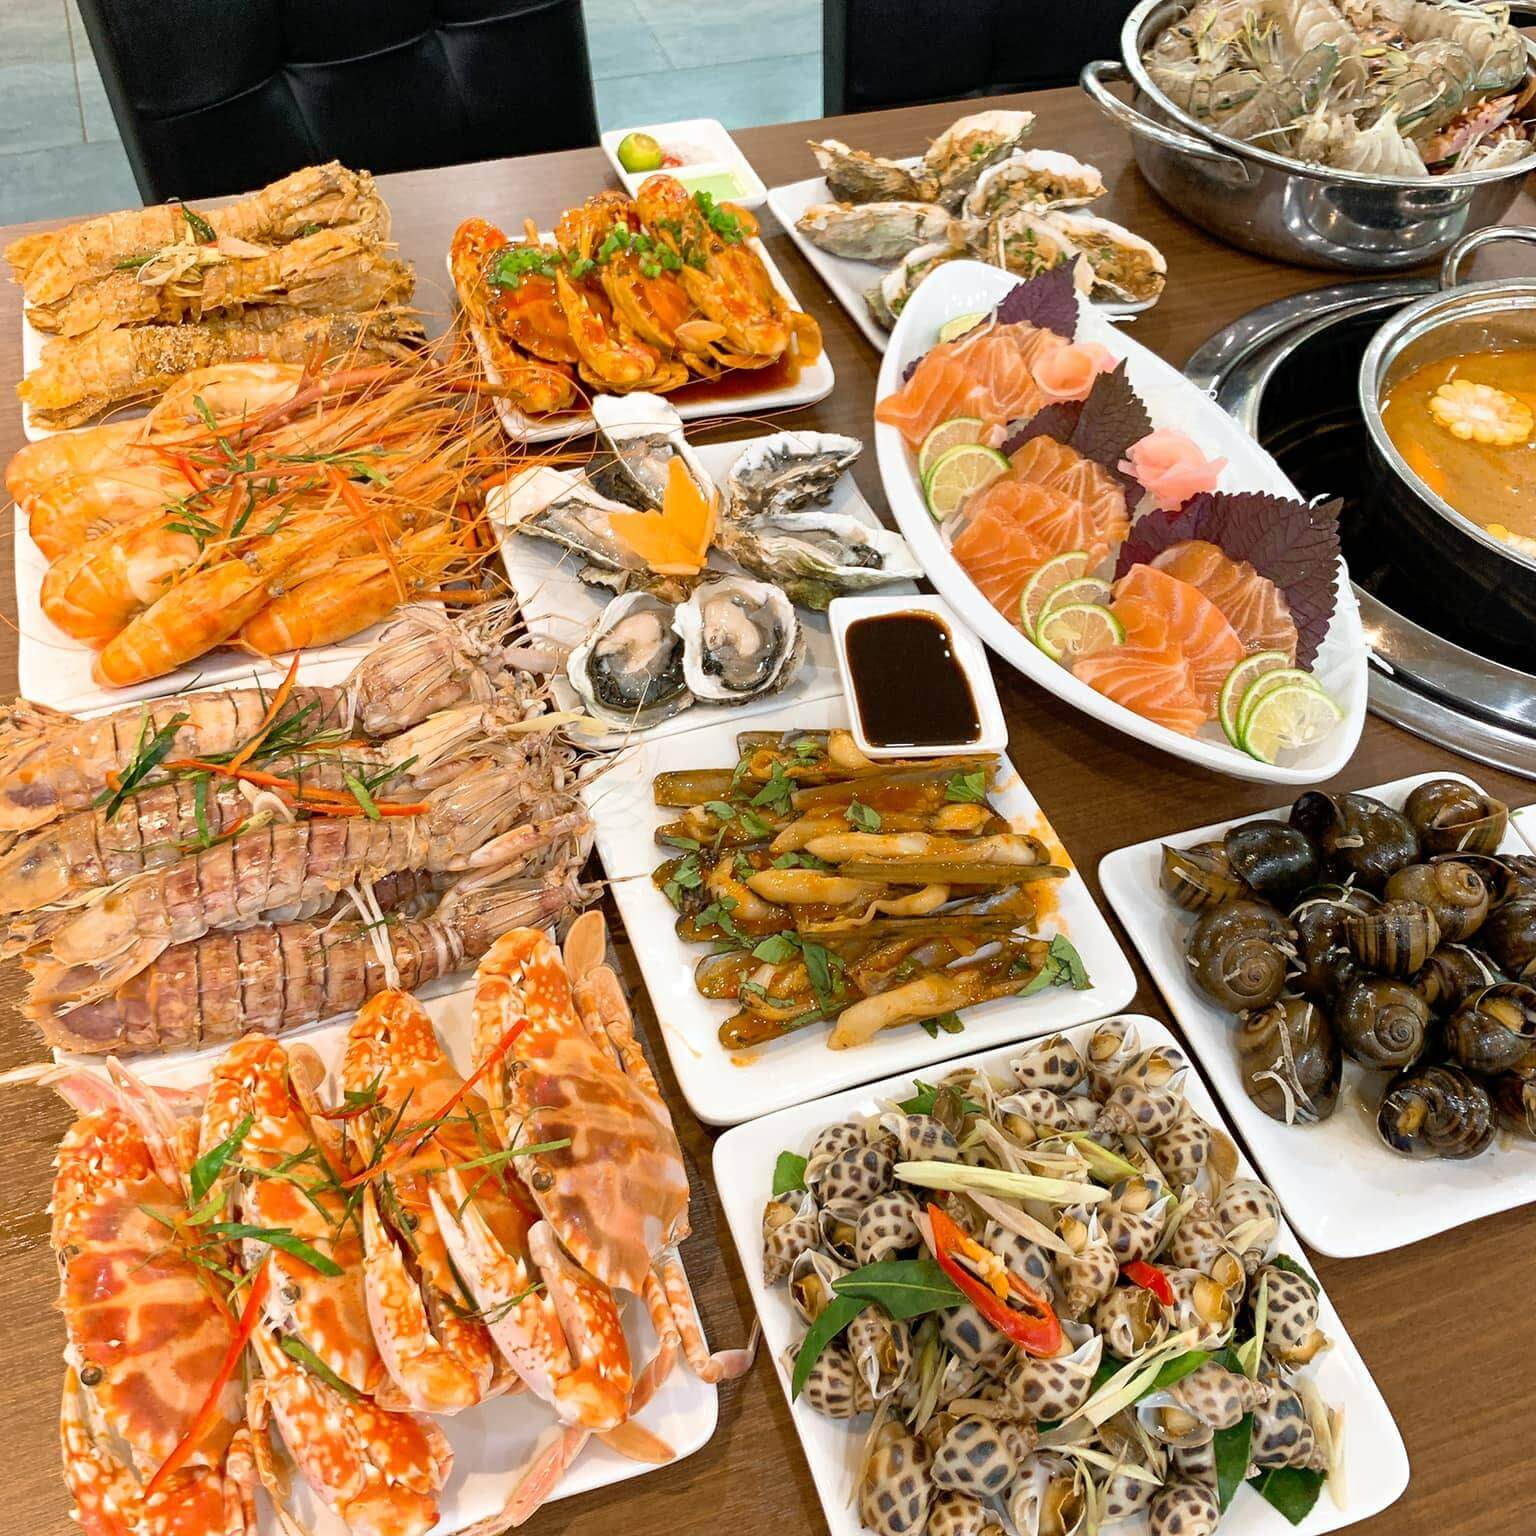 Buffet hải sản Hà Nội